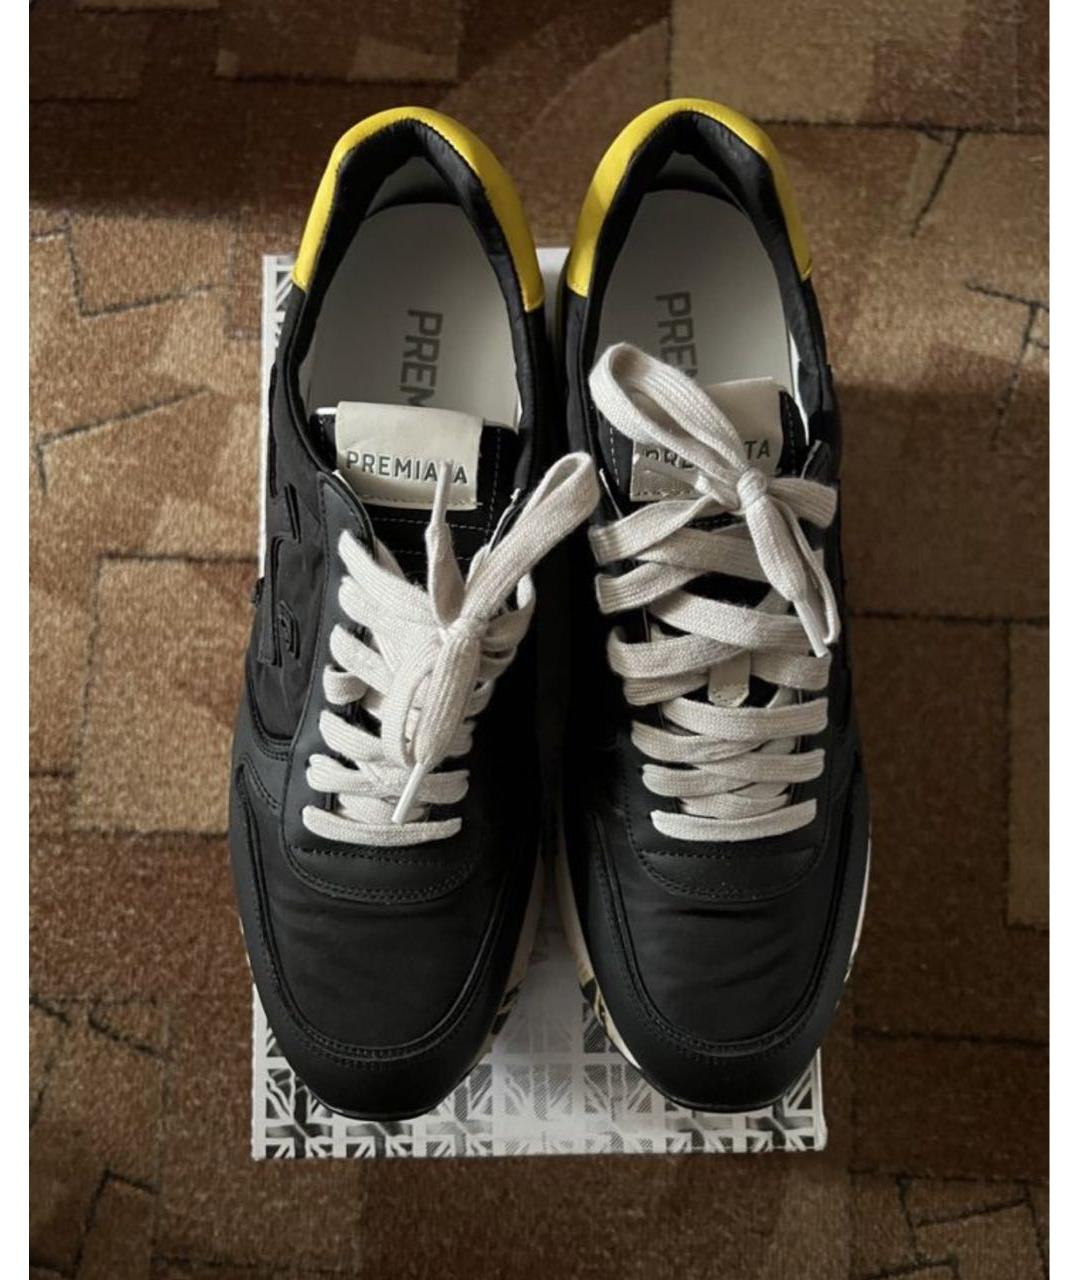 PREMIATA Черные кожаные высокие кроссовки / кеды, фото 2